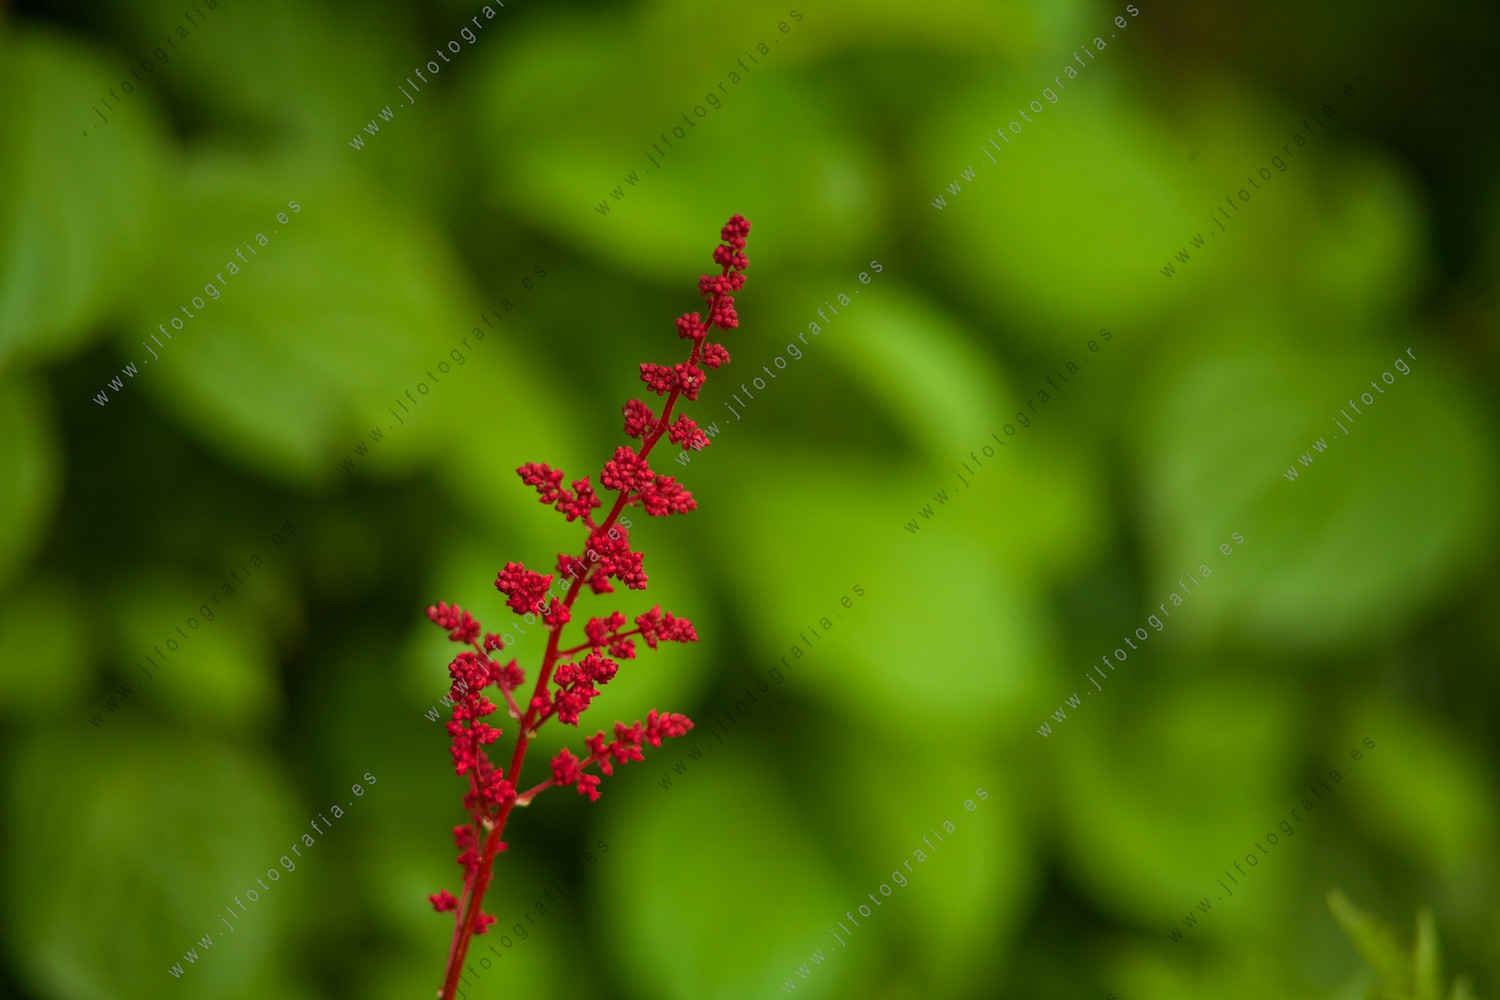 Detalle de una flor roja en un fondo verde.